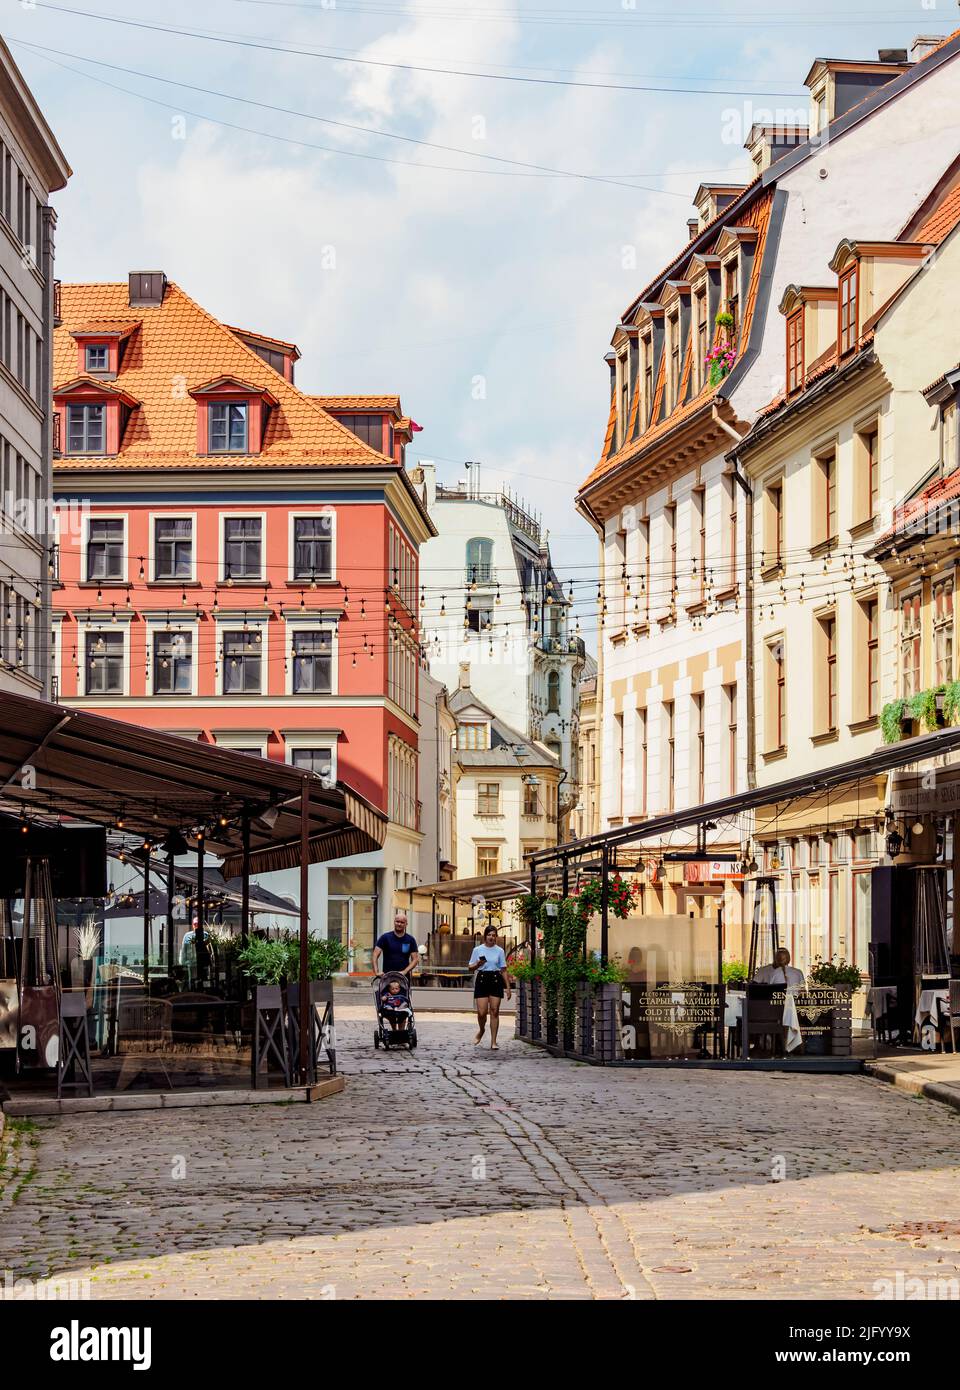 Skarnu iela, Old Town, Riga, Latvia, Europe Stock Photo